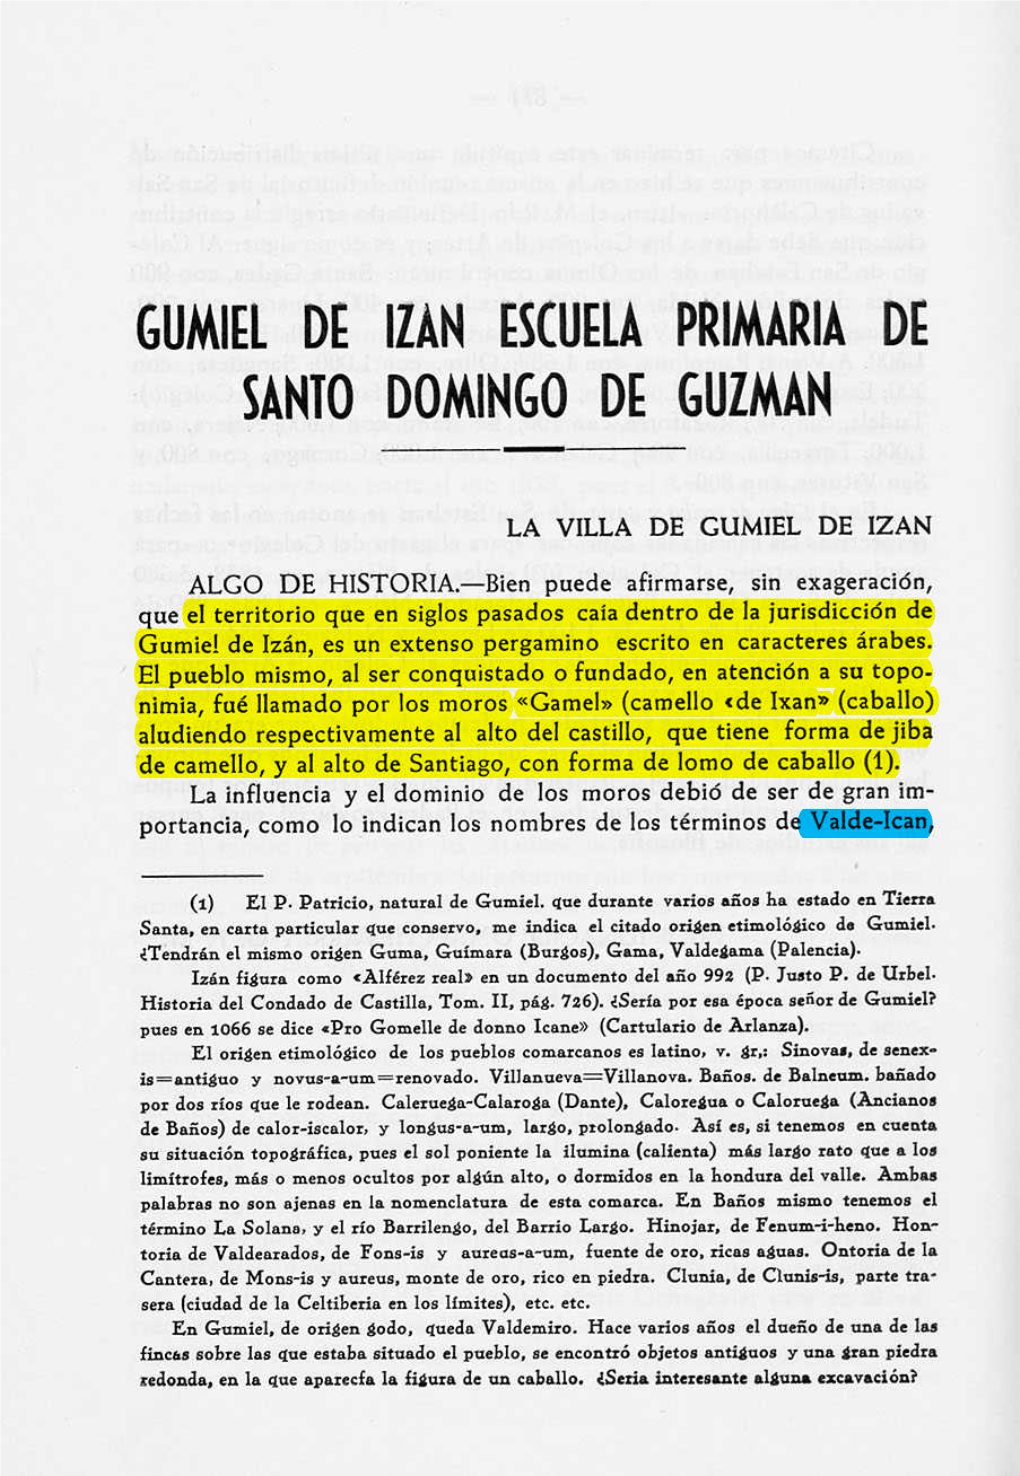 Gumiel De Izan Escuela Primaria De Santo Domingo De Guzmán